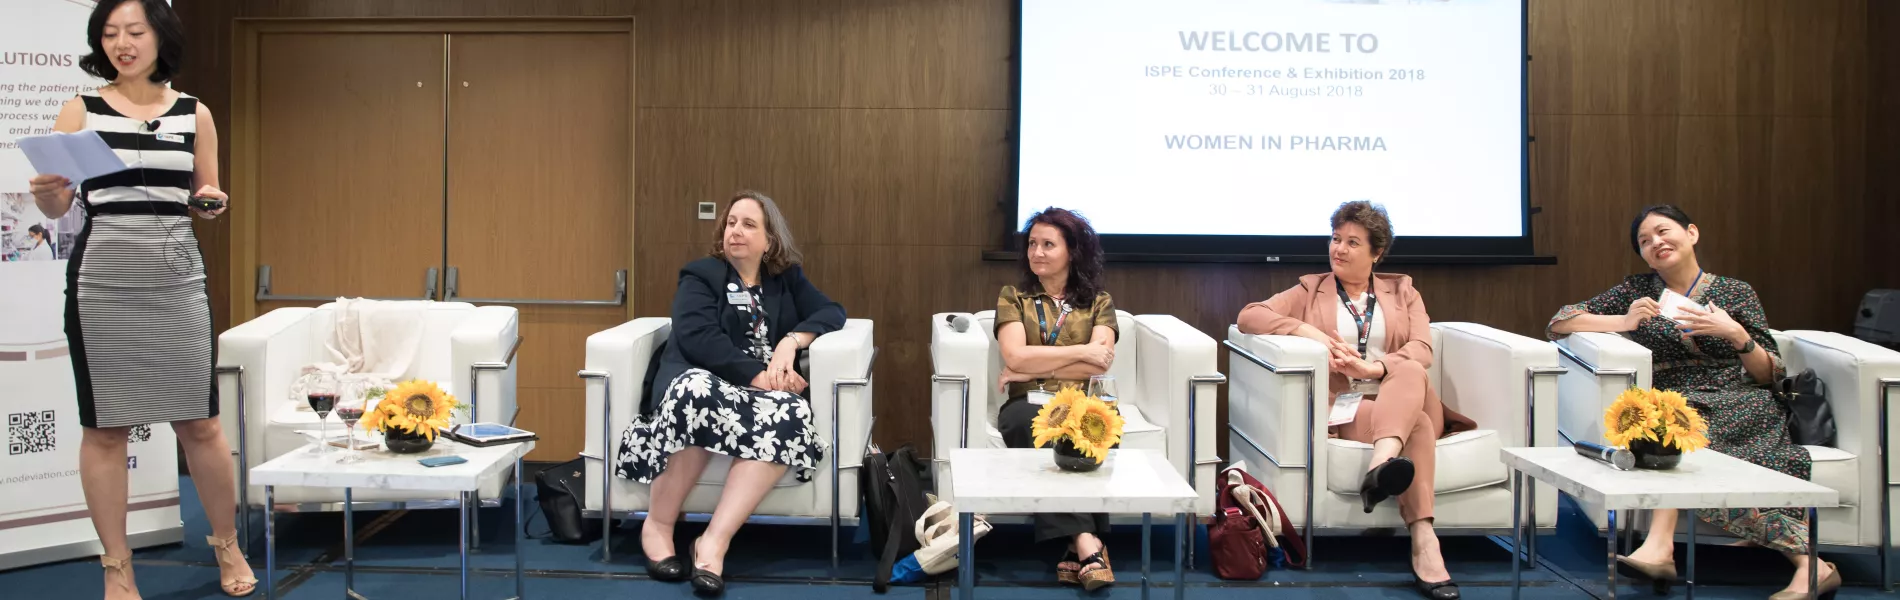 Women In Pharma Panel 2018